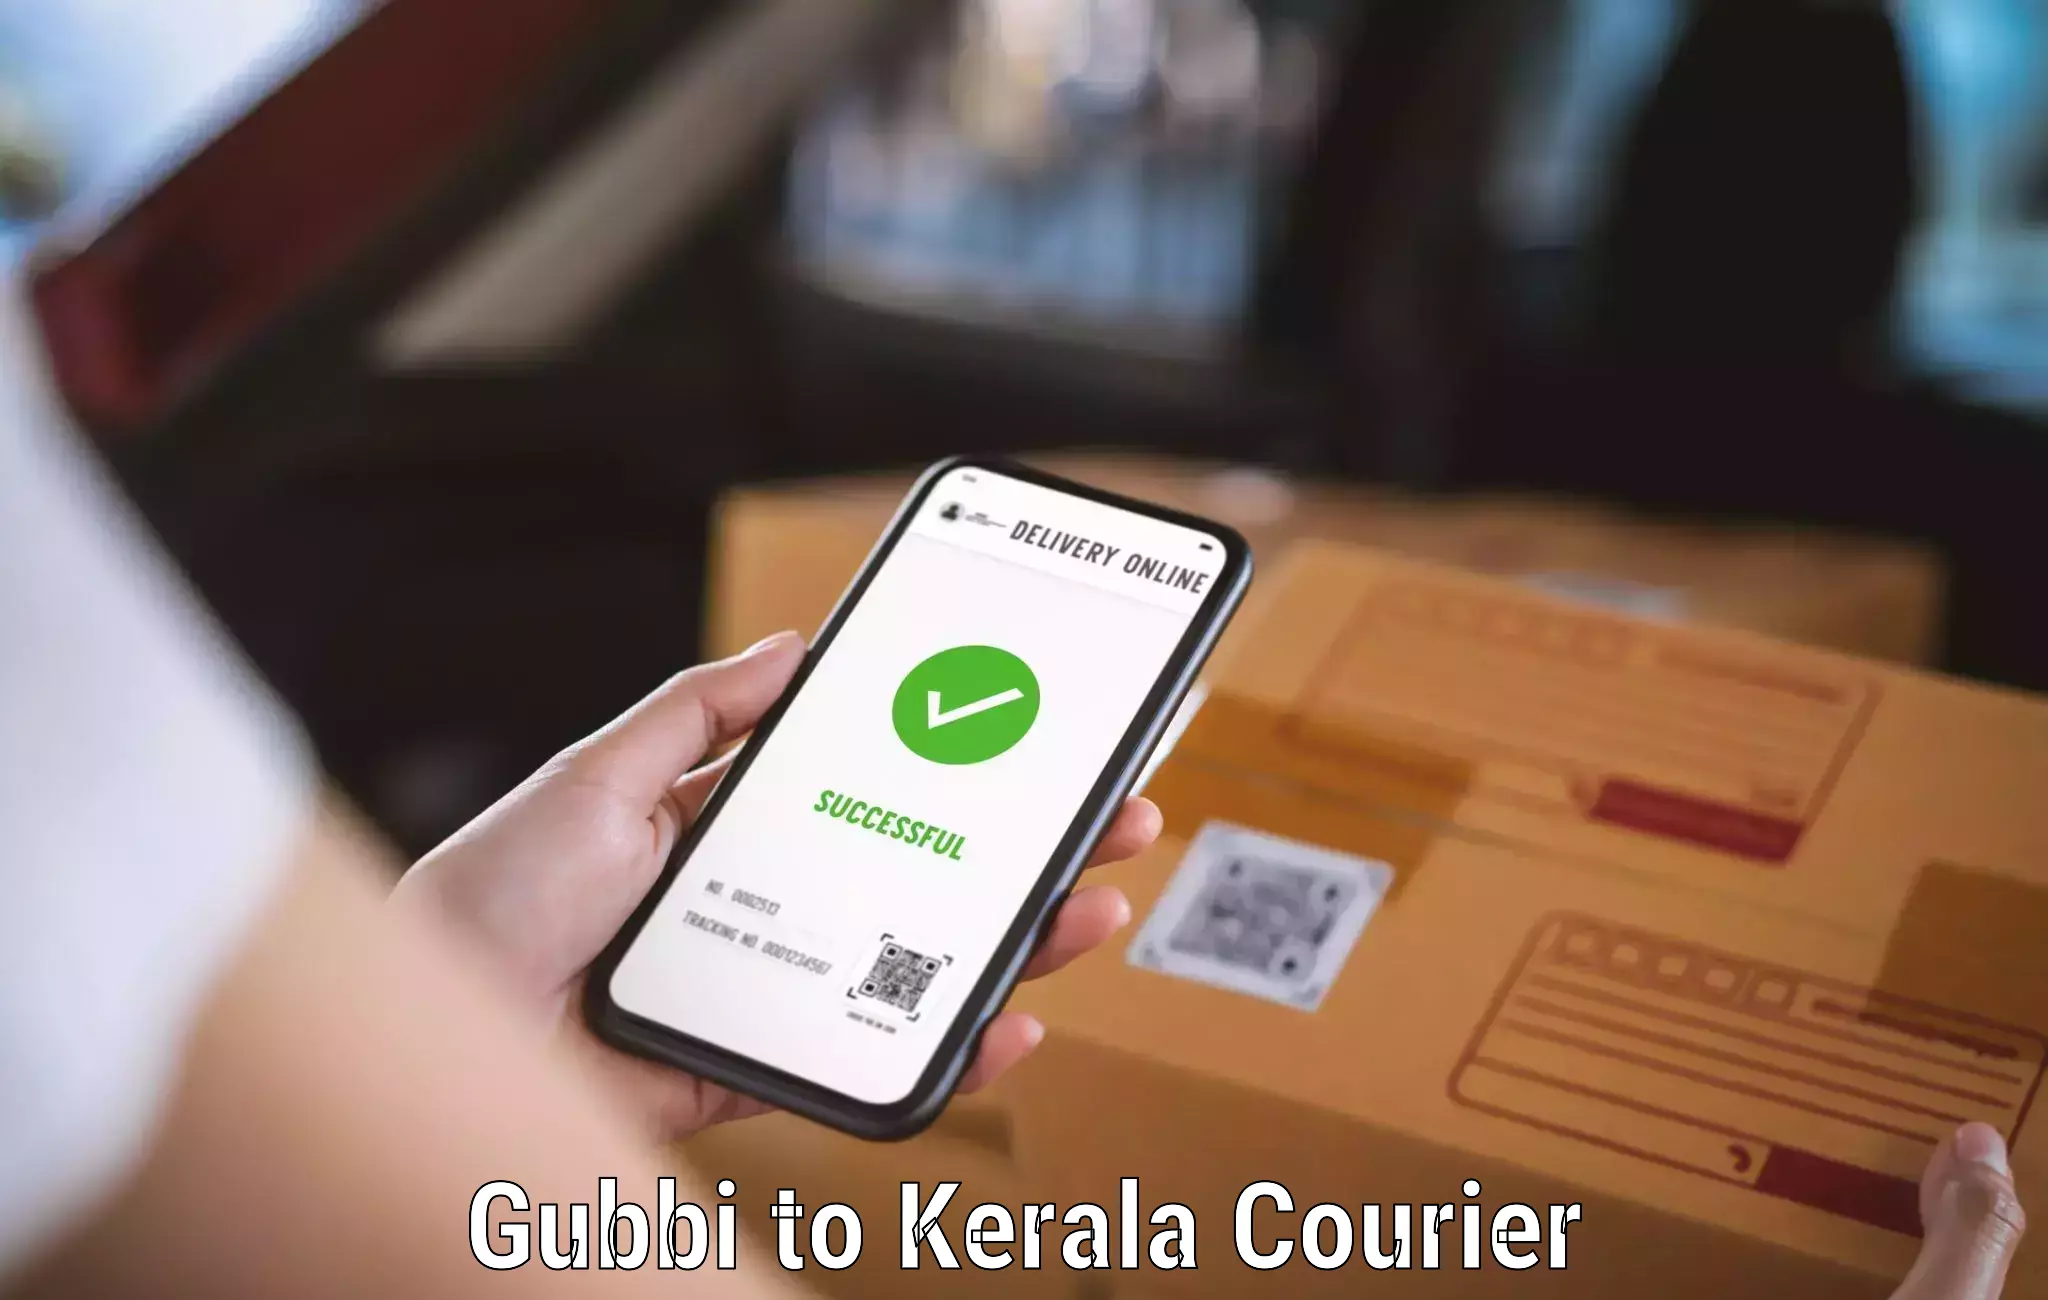 24/7 courier service Gubbi to Parippally